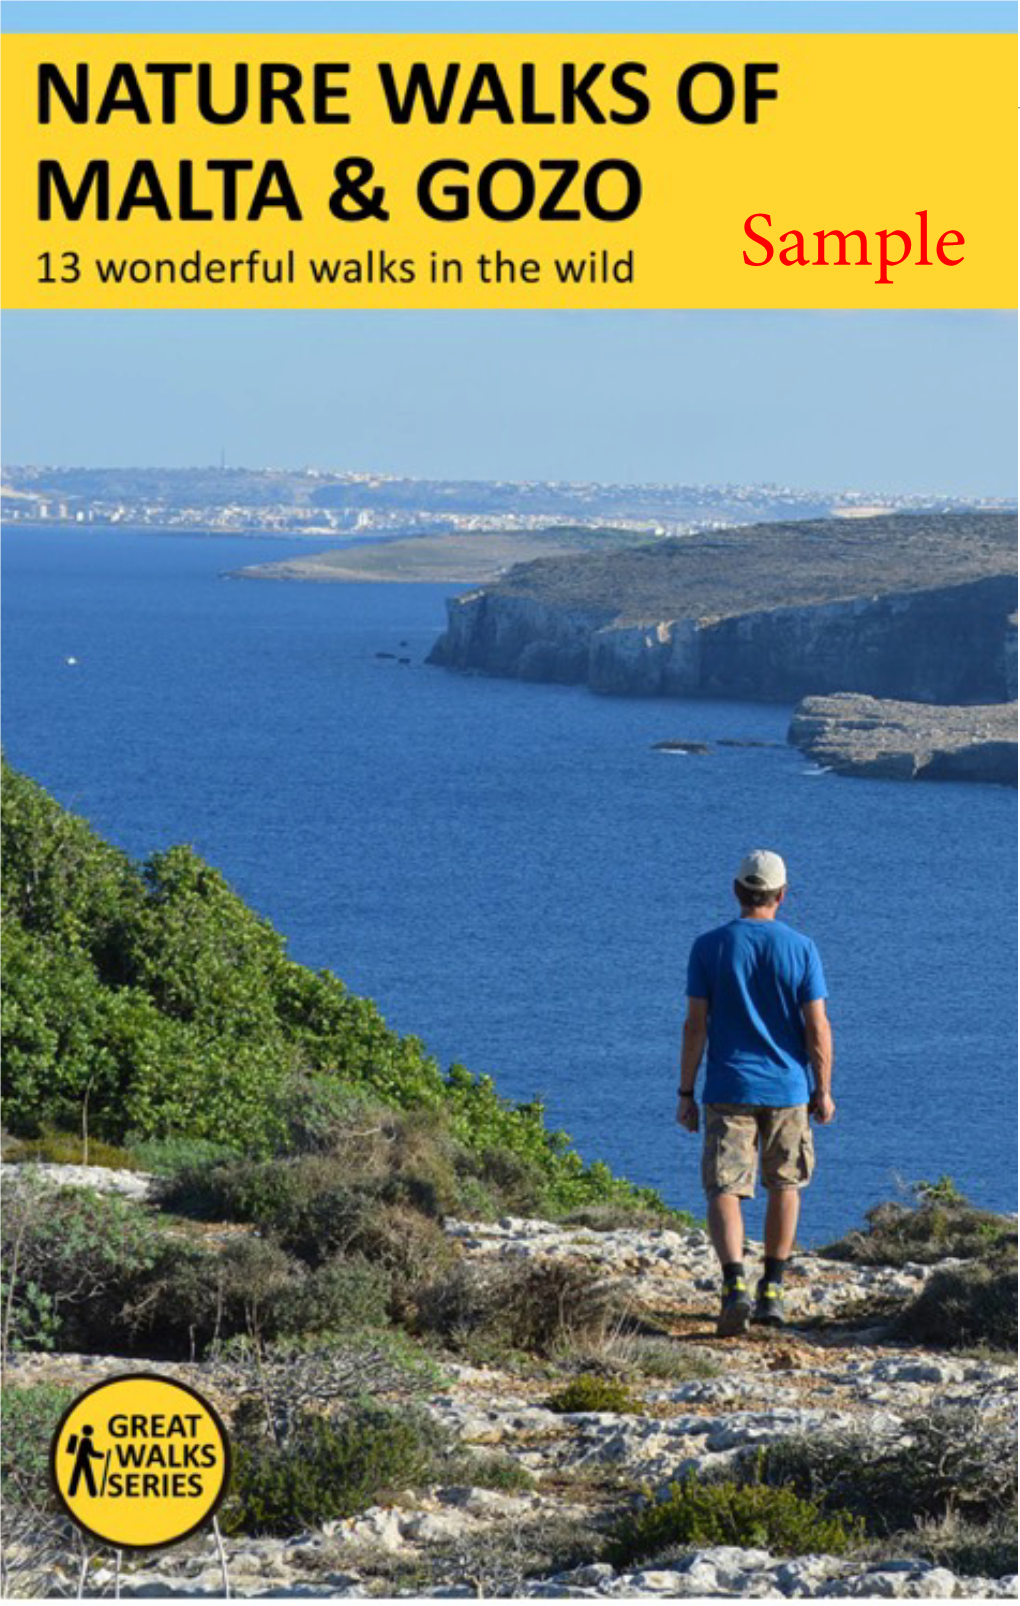 Sample Nature Walks Malta and Gozo